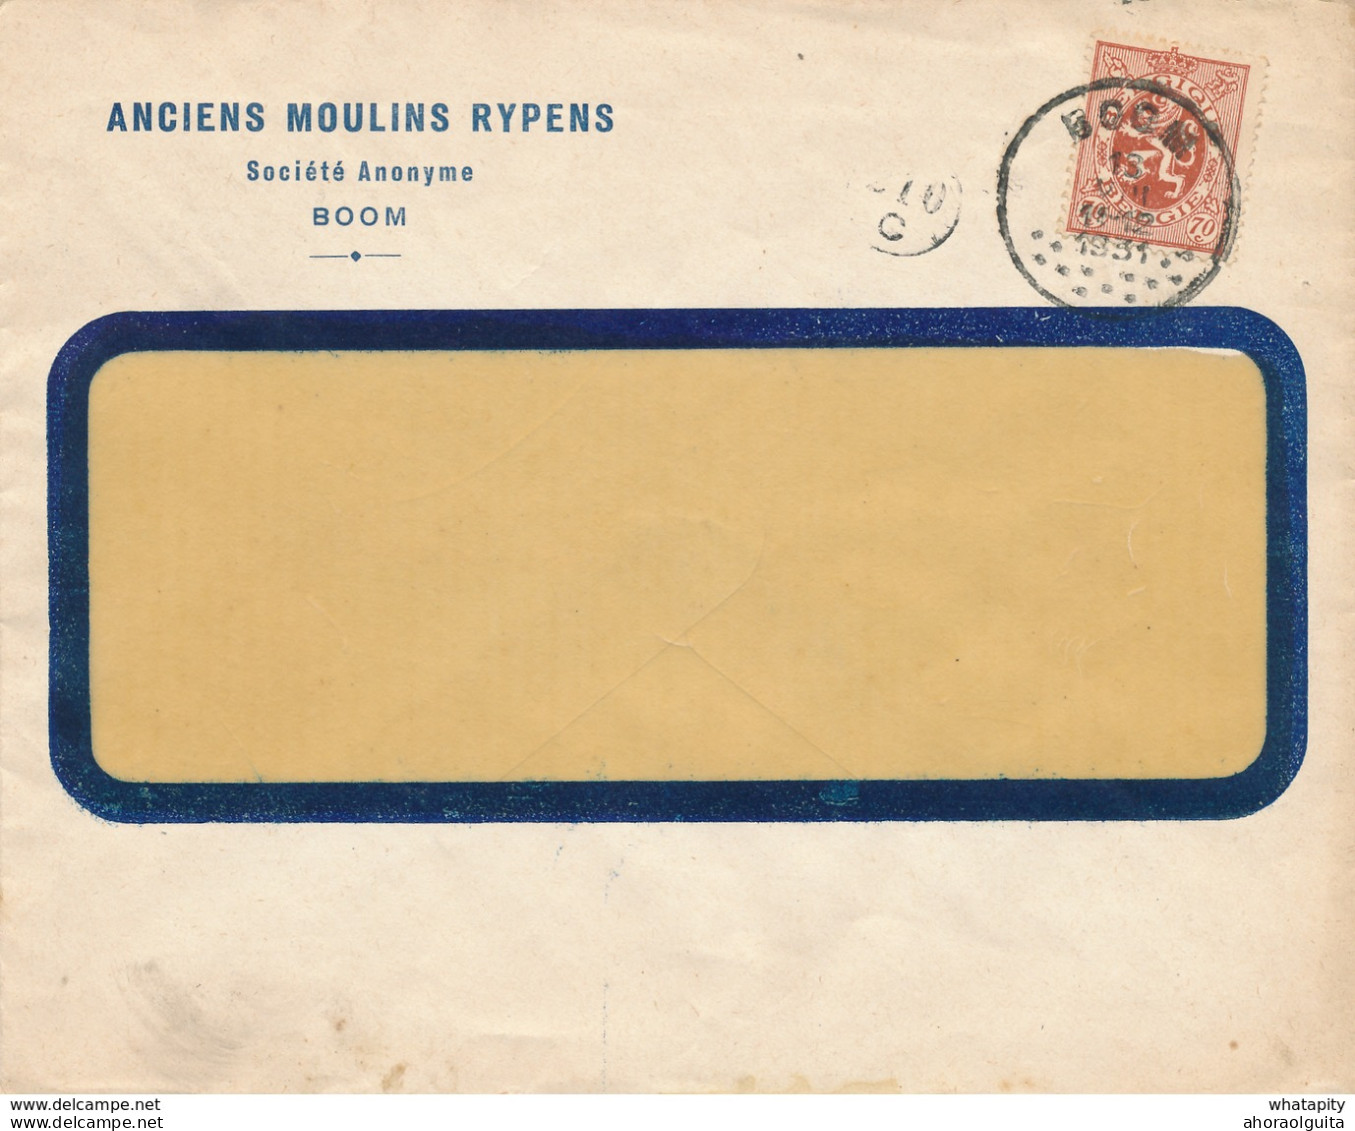 270/28 - Enveloppe TP 287 Lion Héraldique BOOM 1931 Vers BXL - Entete Anciens Moulins Rypens S.A. - 1929-1937 Leone Araldico